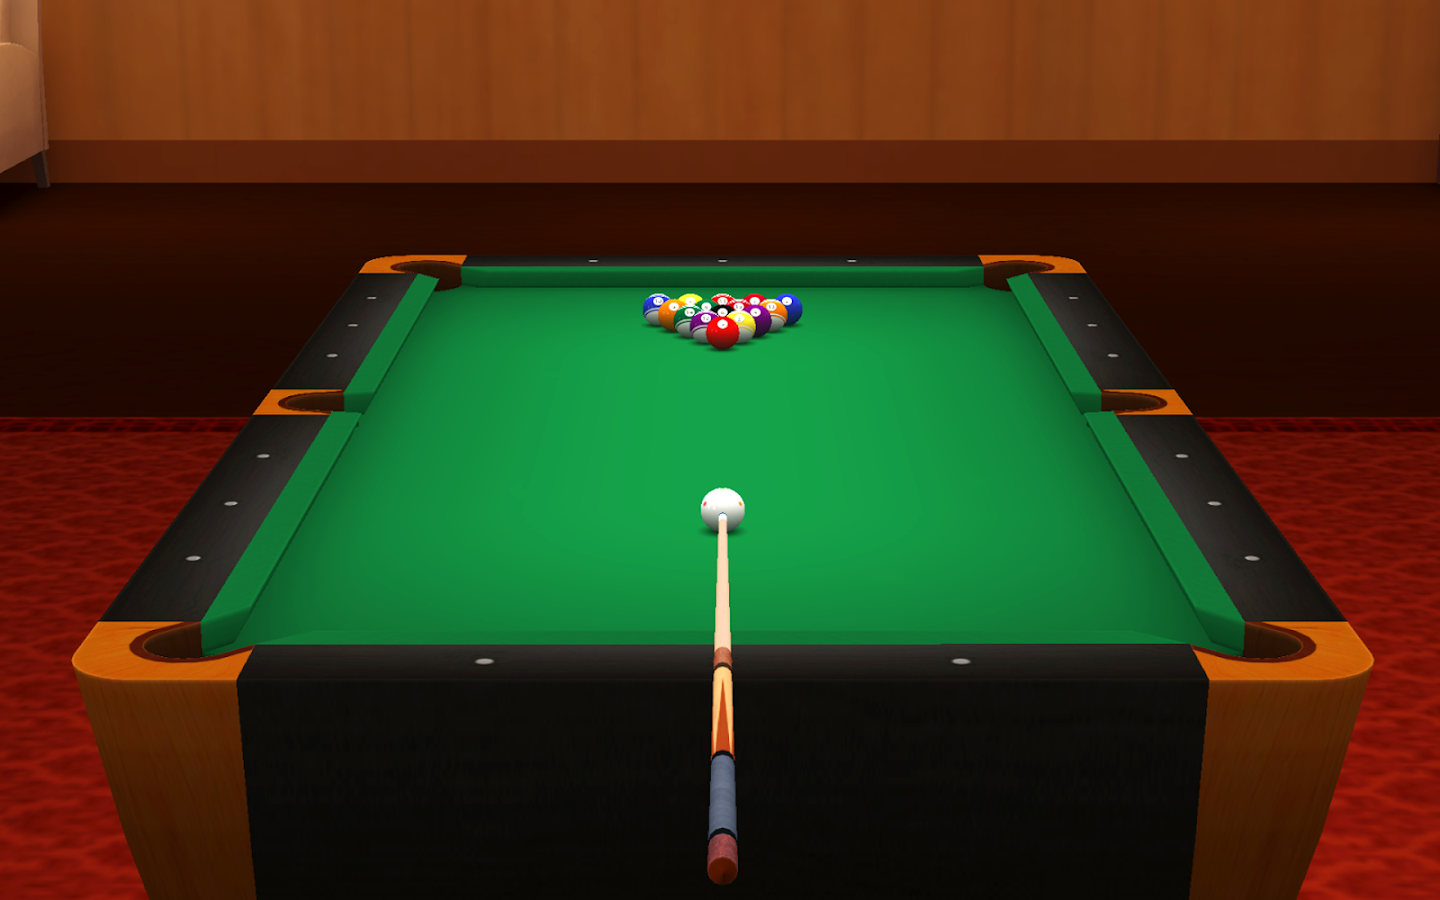 Pool Break Pro 3D Billiards v2.5.5 APK